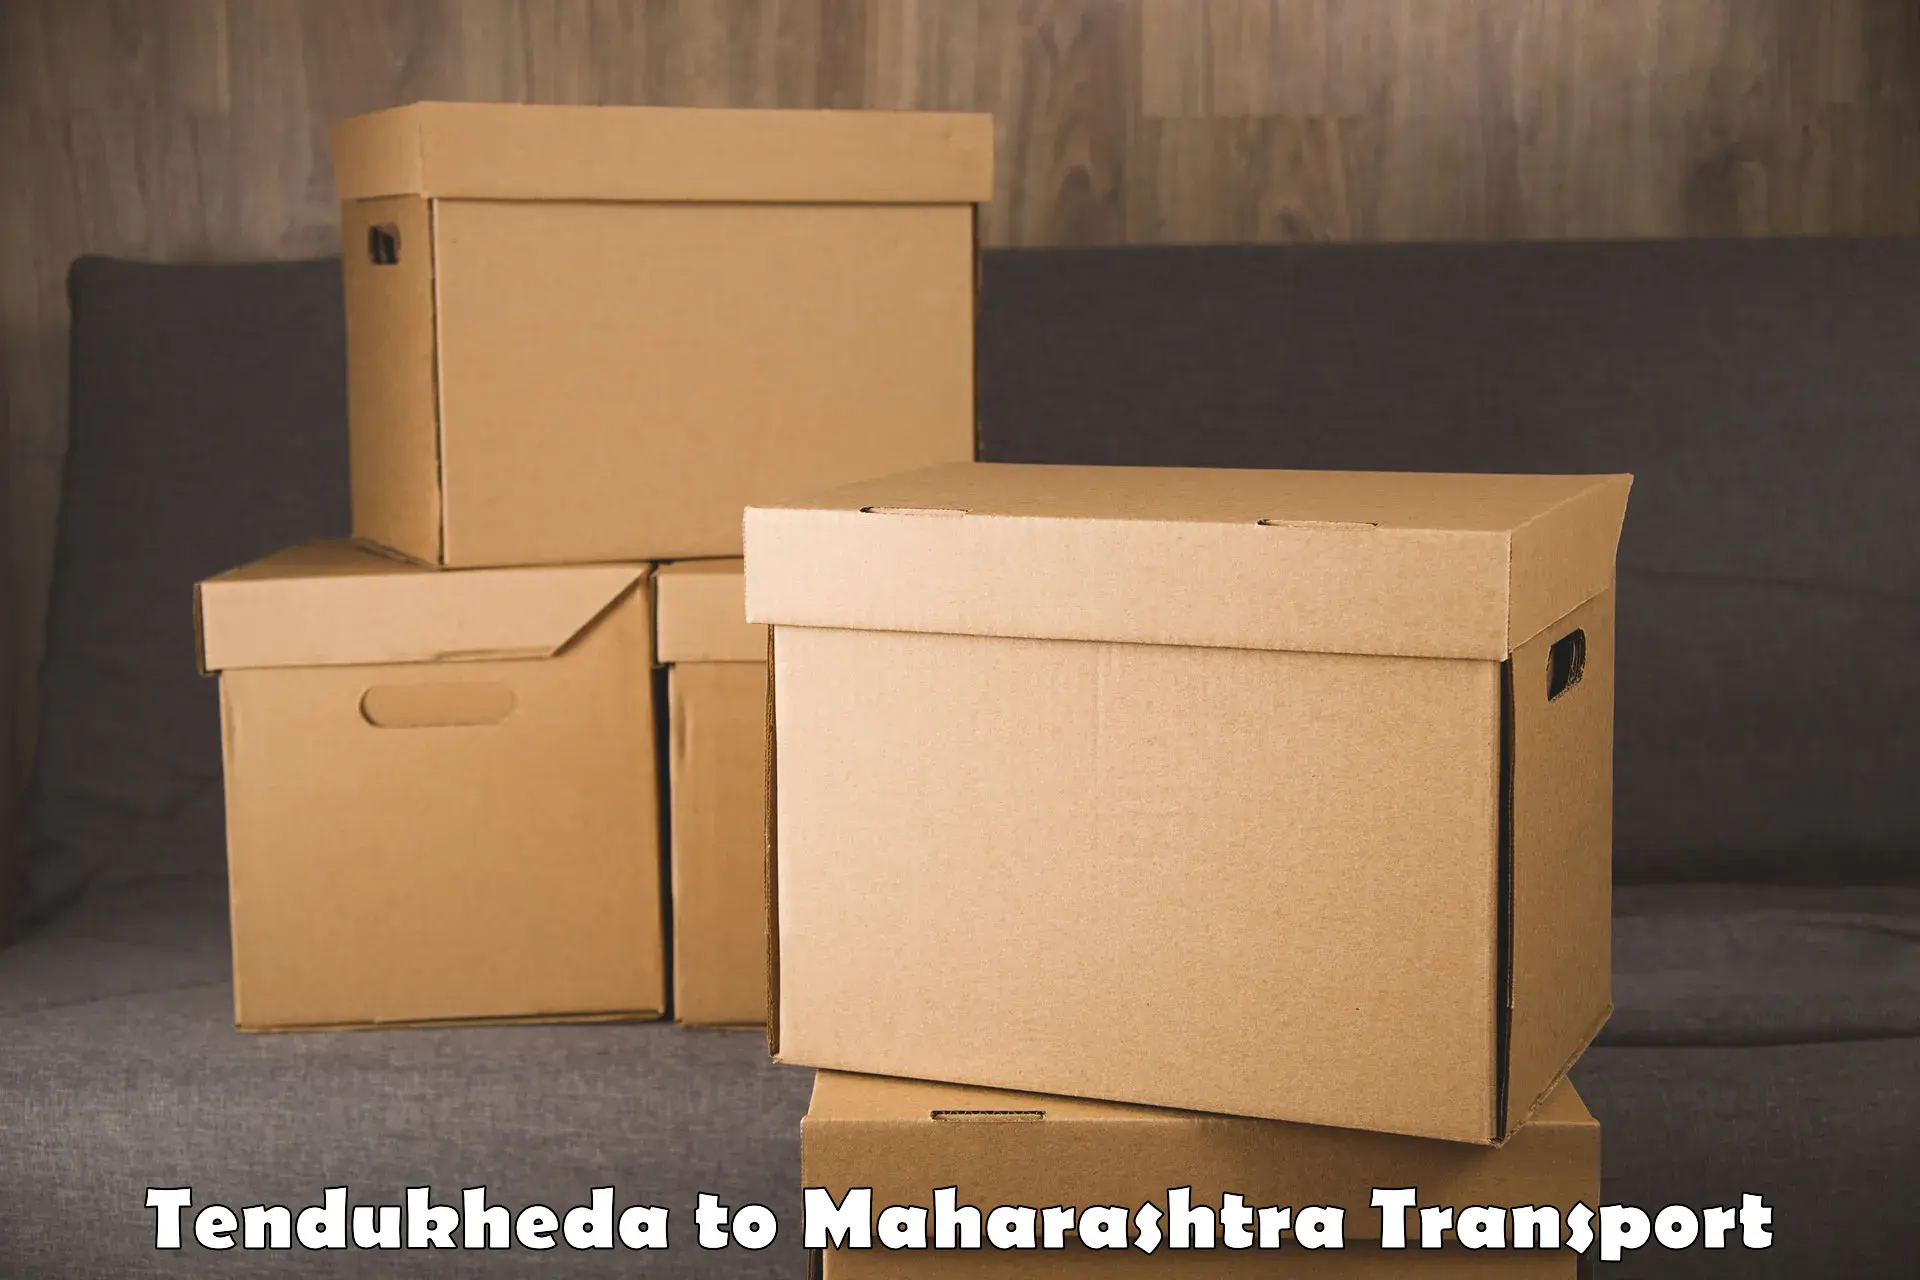 Truck transport companies in India Tendukheda to Solapur